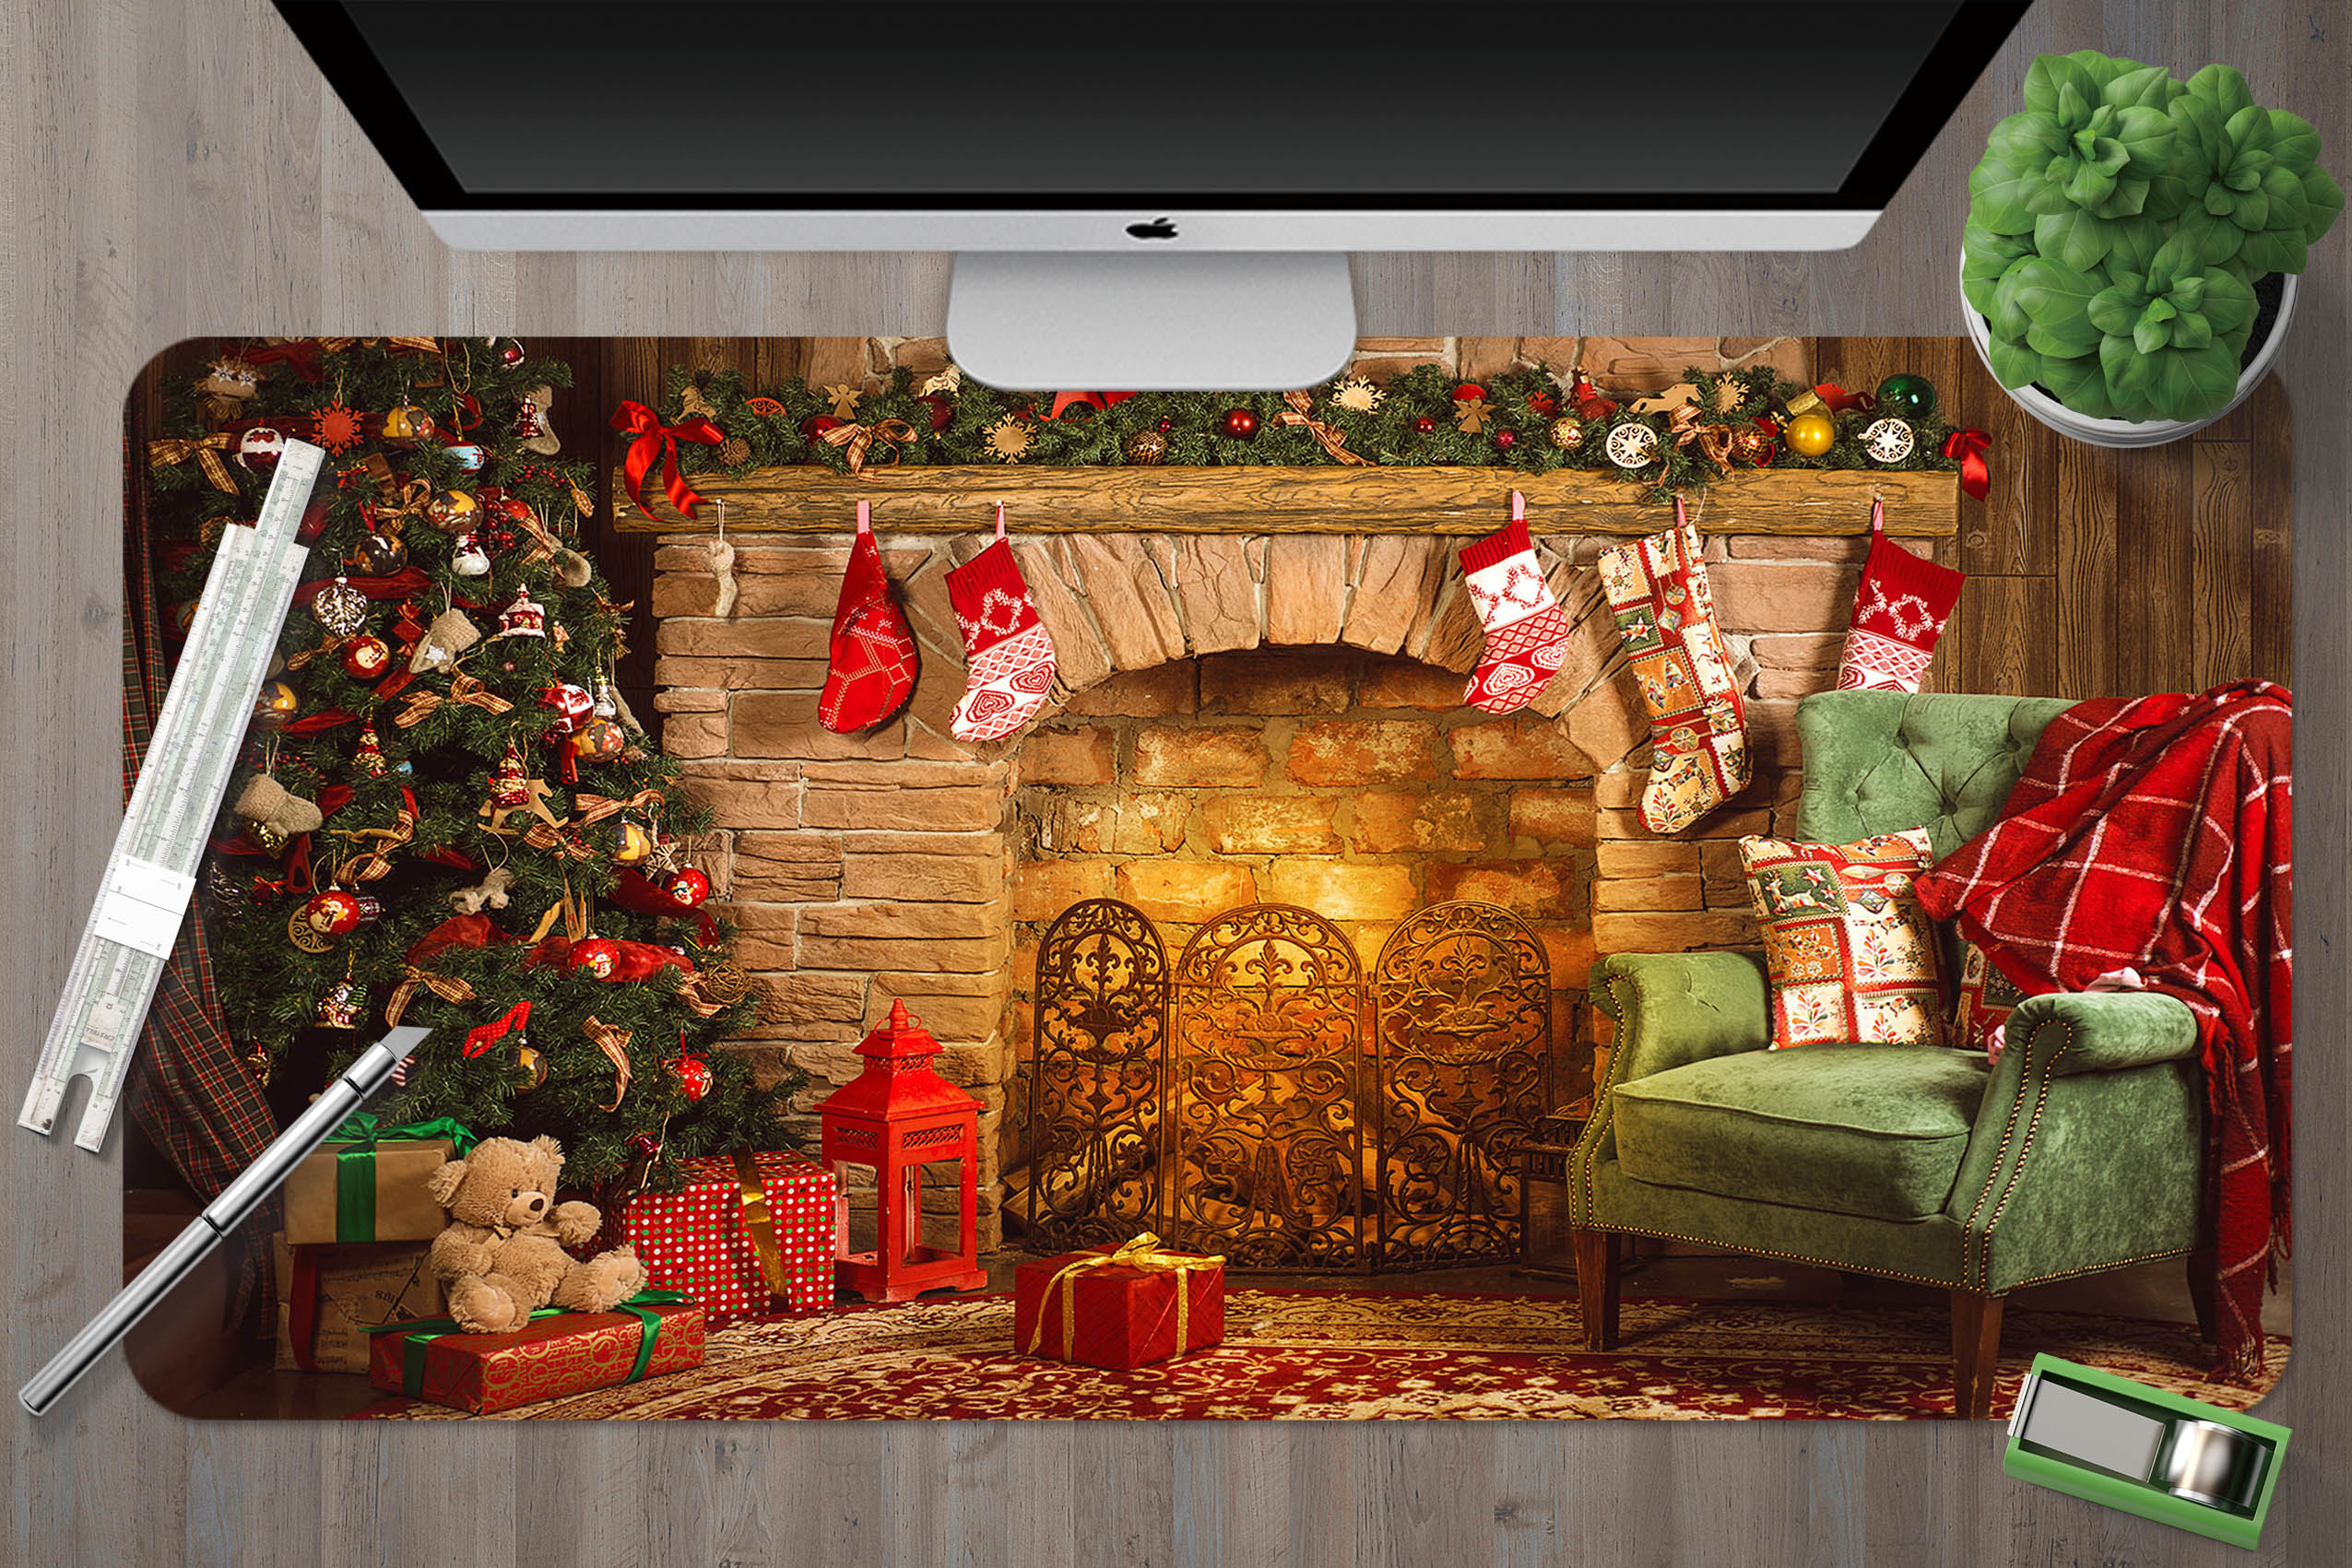 3D Fireplace Sofa 53190 Christmas Desk Mat Xmas